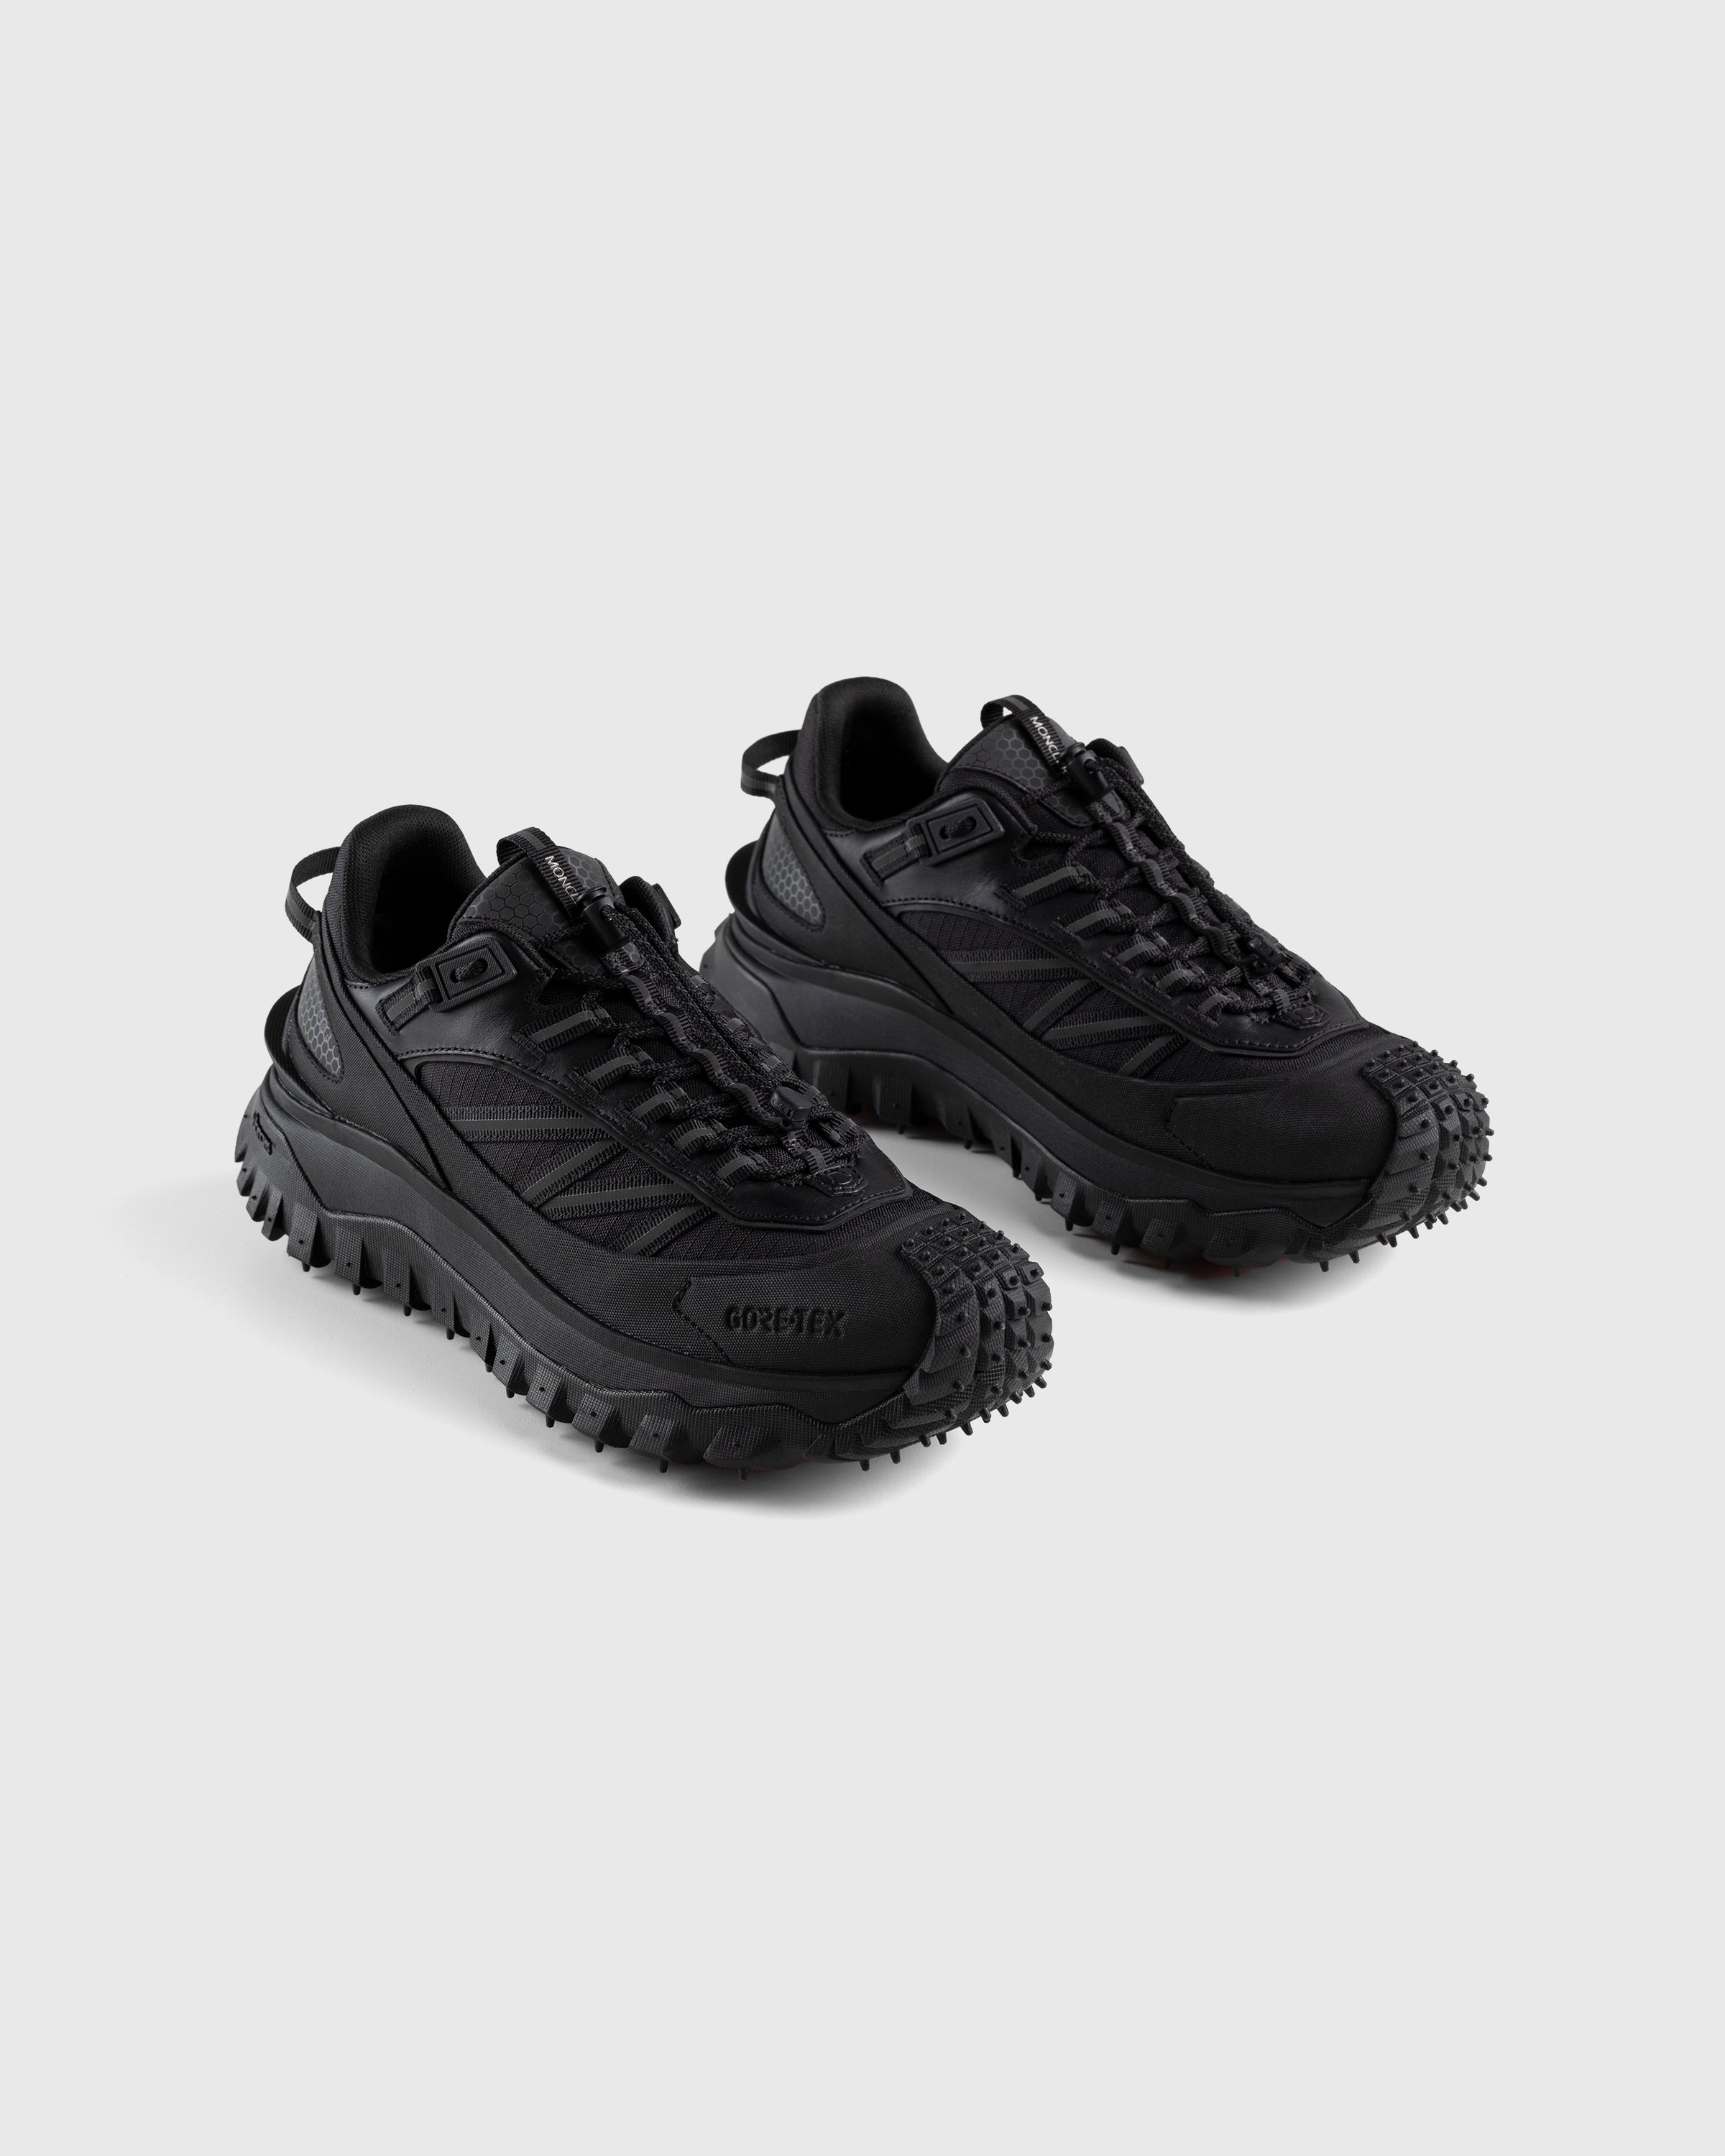 Moncler - Trailgrip GTX Sneakers Black - Footwear - Black - Image 3